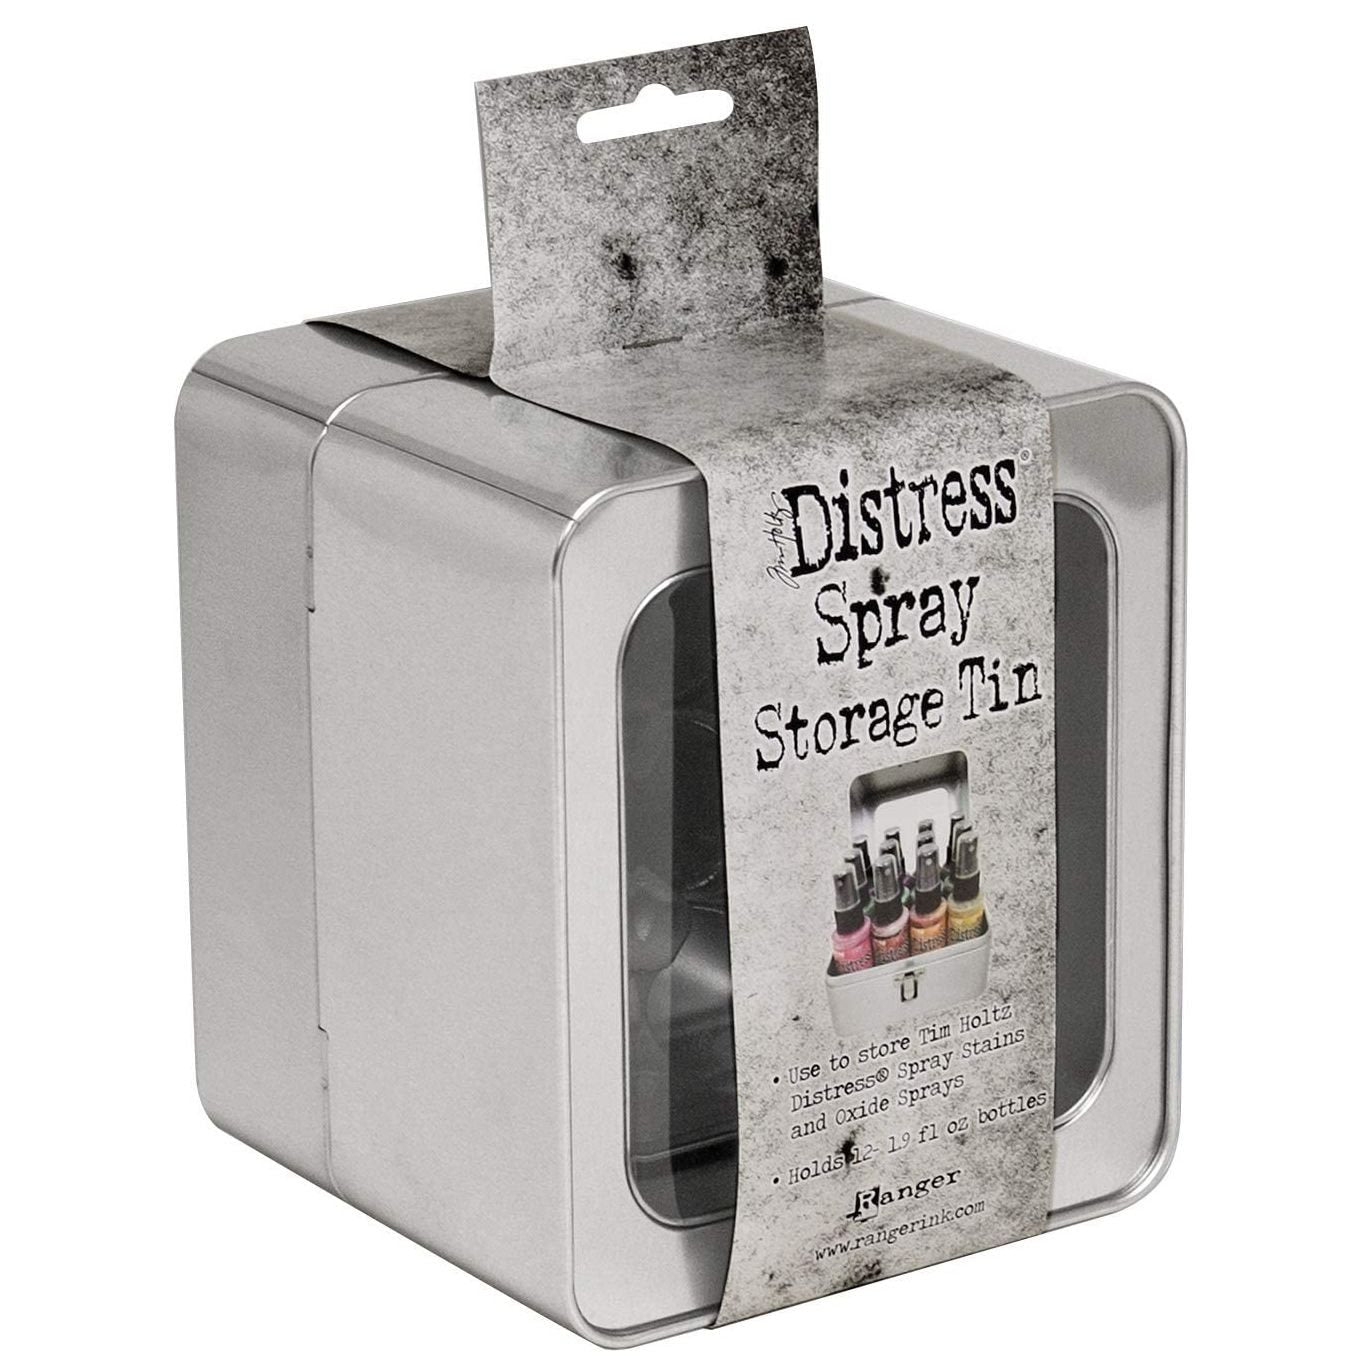 Distress Spray Storage tin Ranger